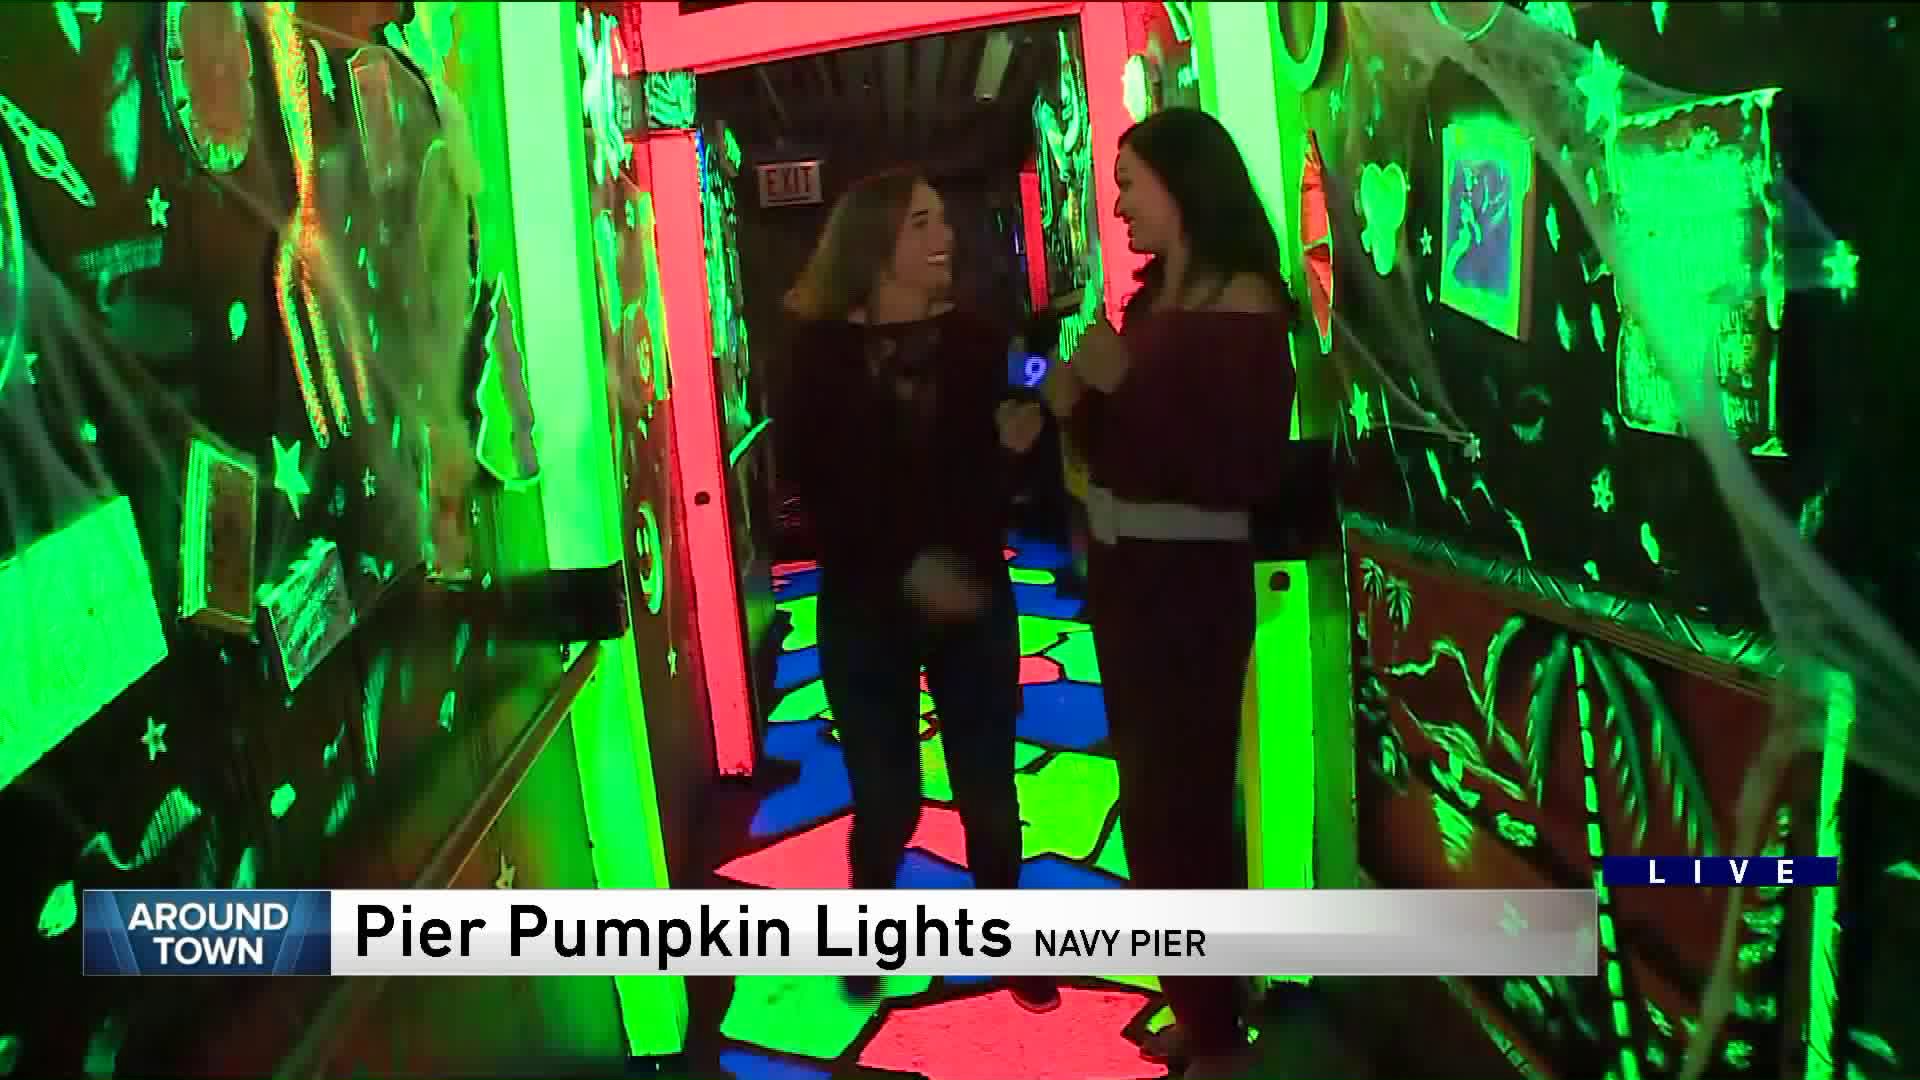 Around Town visits Pier Pumpkin Lights